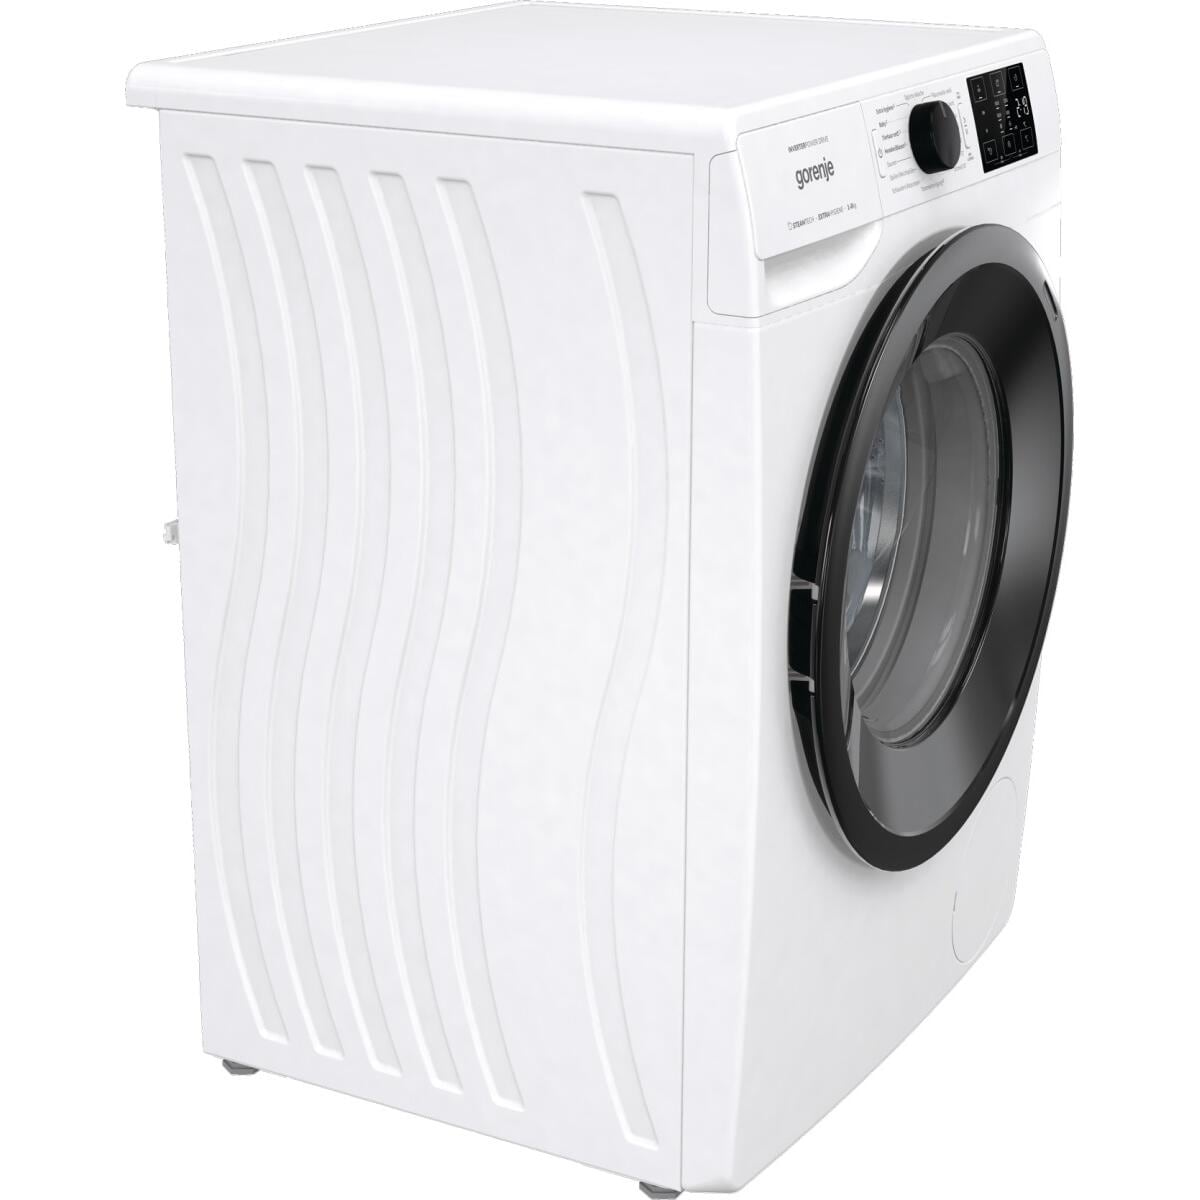 Gorenje WNEI86APS 8kg Frontlader Waschmaschine, LED Dampffunktion, 3-teilige Waschmittelschublade, Weiß Wagner 60cm breit, Display, Kindersicherung, 1600U/Min, Elektroshop